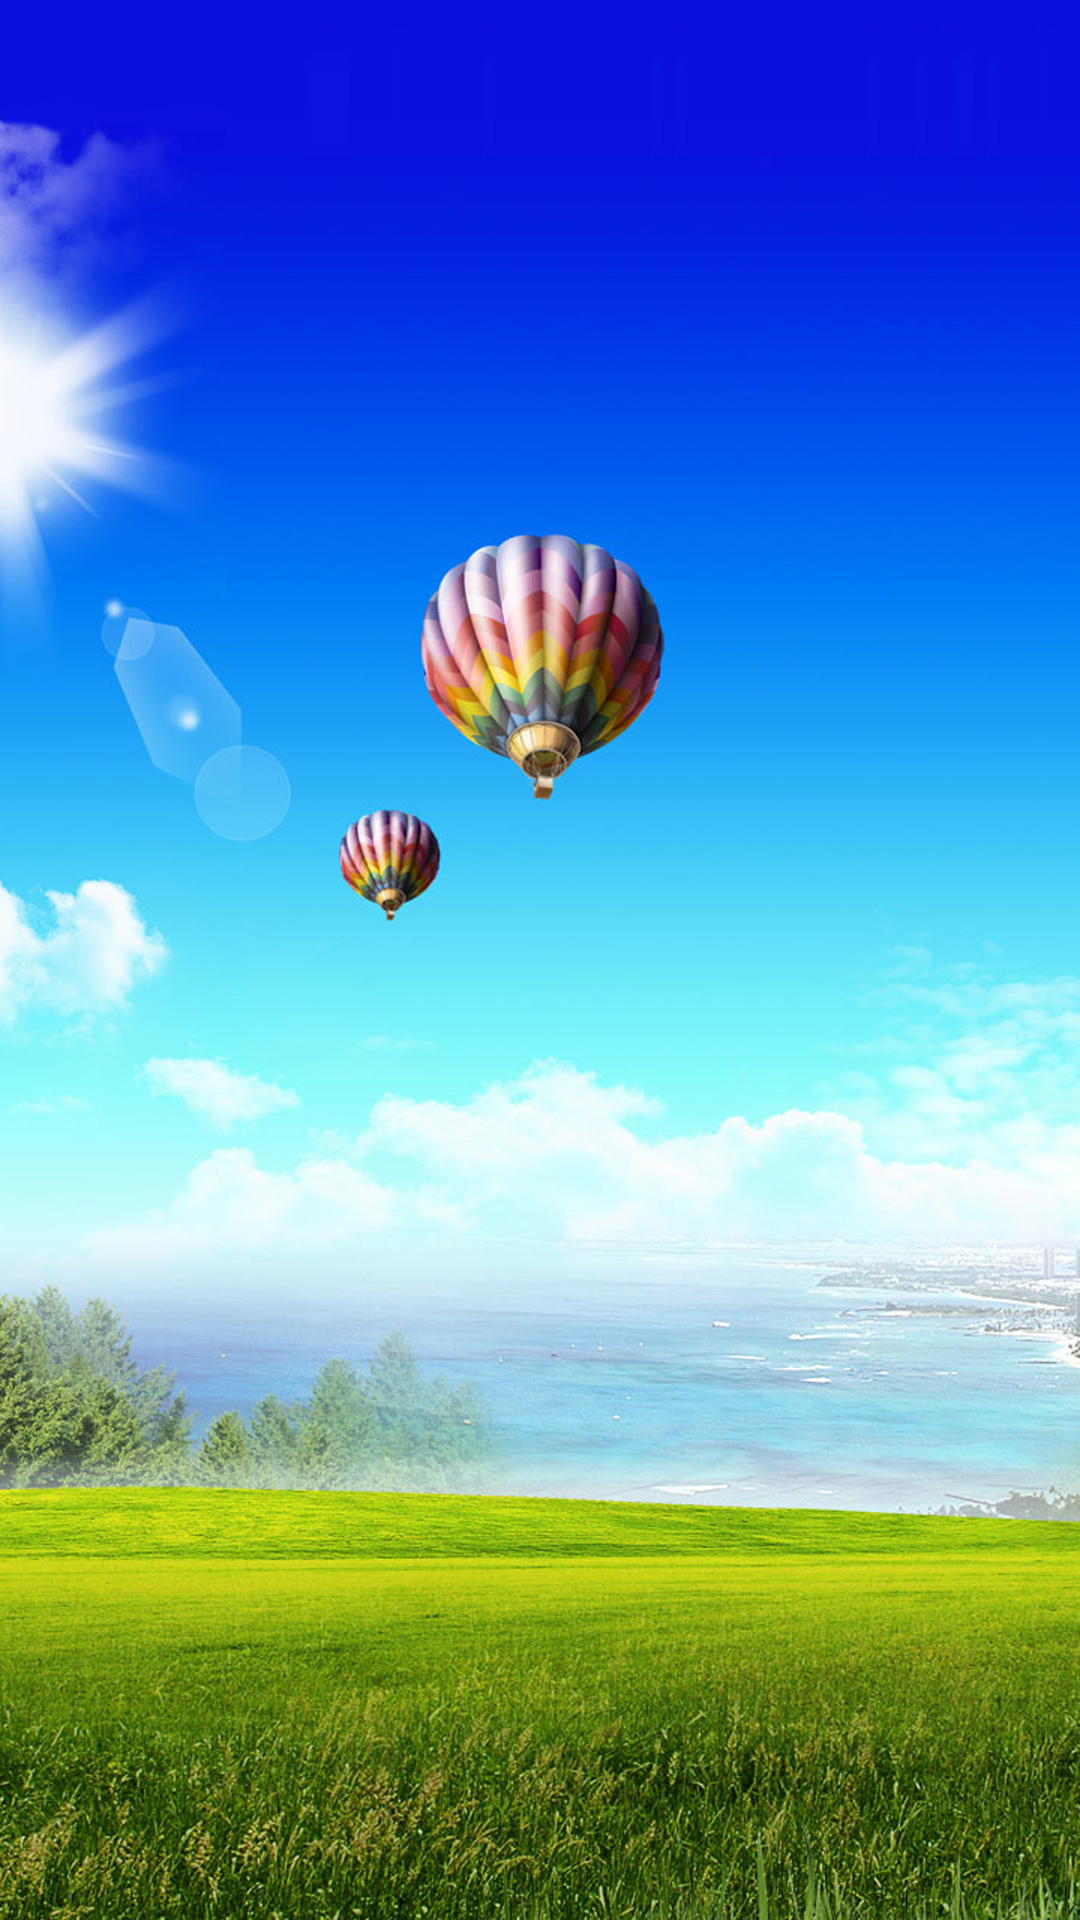 samsung s4 live wallpaper,hot air ballooning,hot air balloon,sky,nature,natural environment